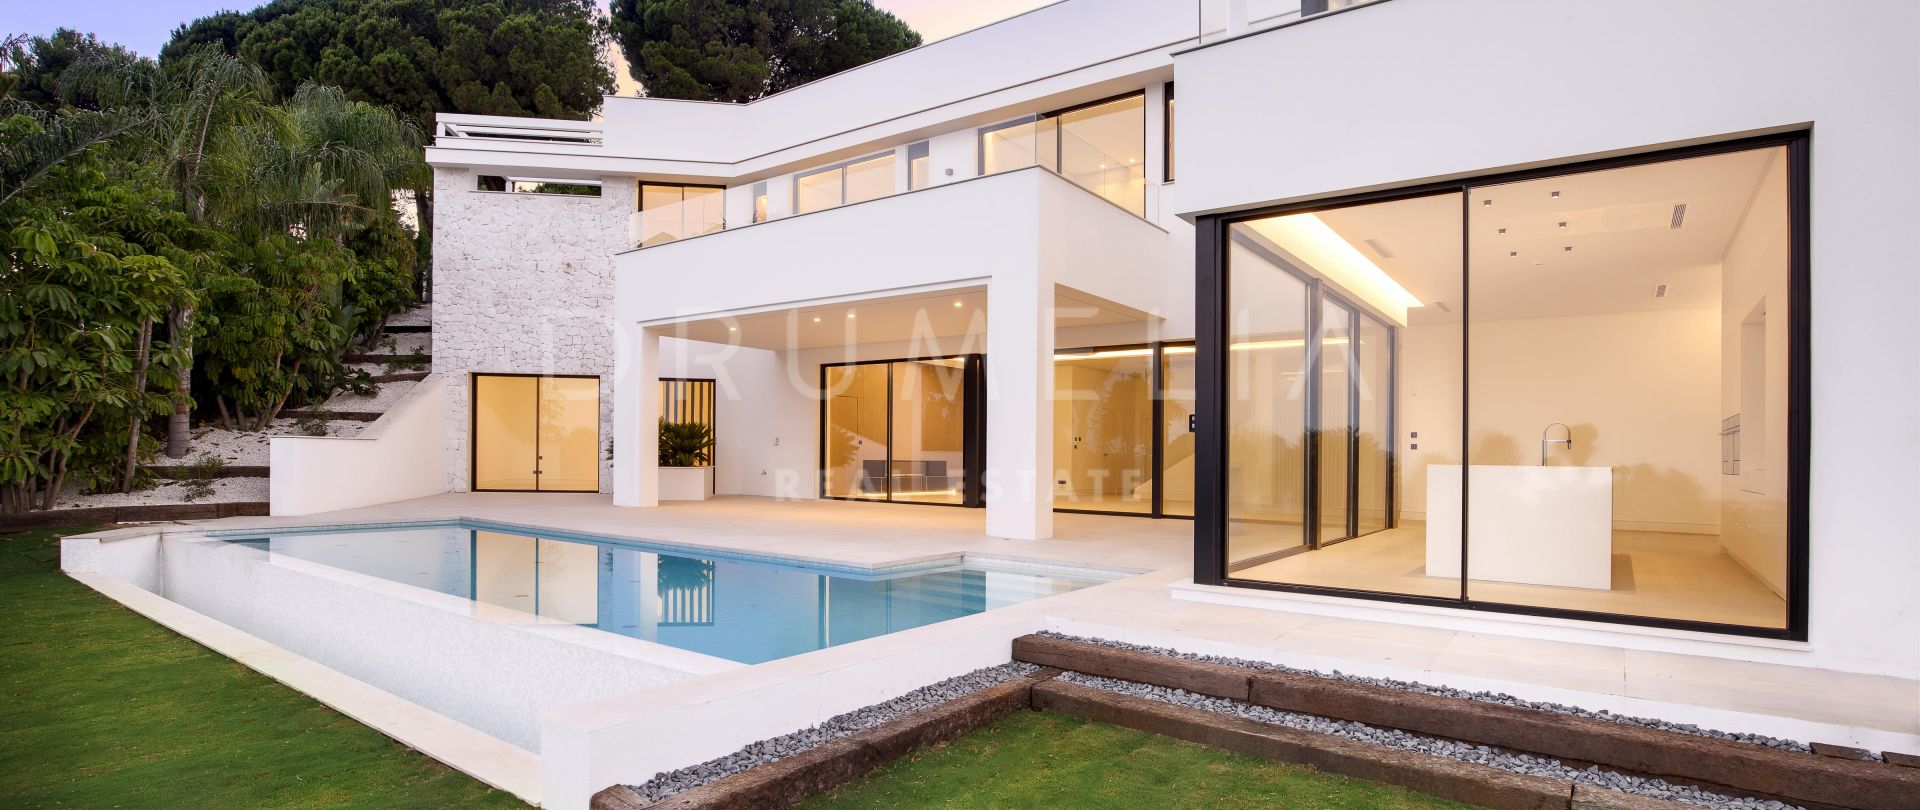 Villa for salg i Rio Real, Marbella Øst